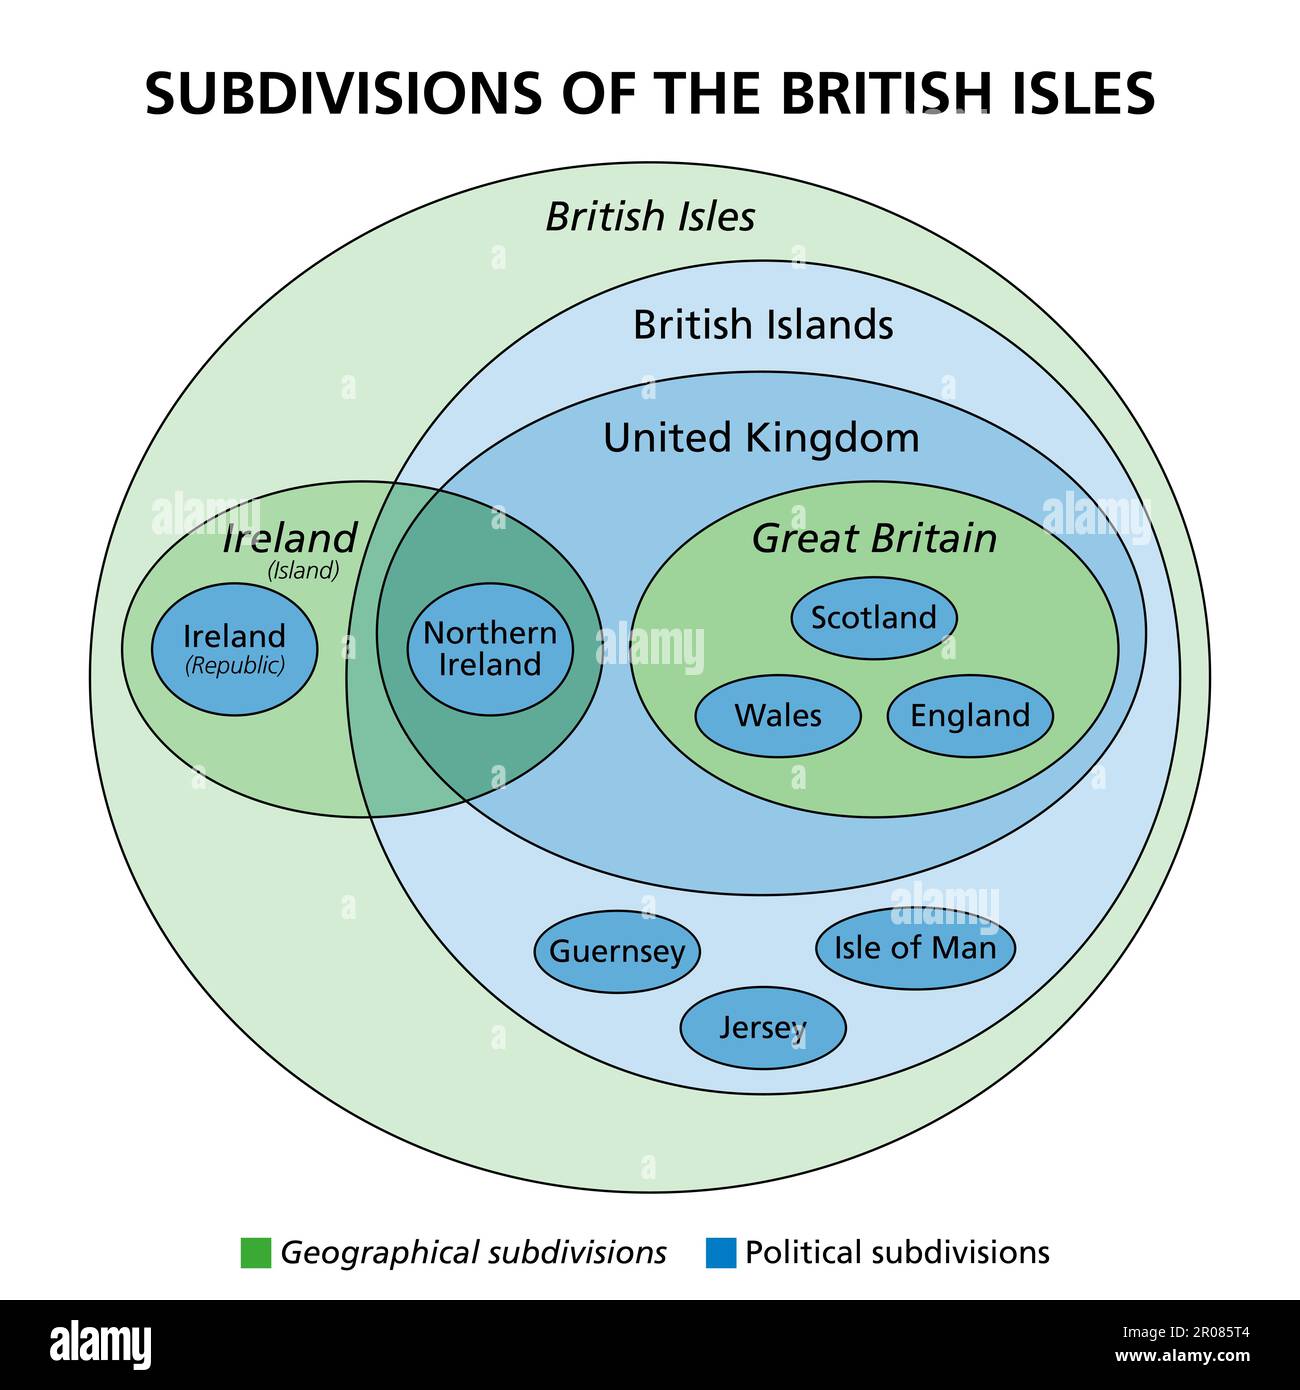 Subdivisiones de las Islas Británicas, diagrama de Euler. Subdivisiones geográficas (verdes) y políticas (azules), con los estados soberanos Irlanda y el Reino Unido. Foto de stock